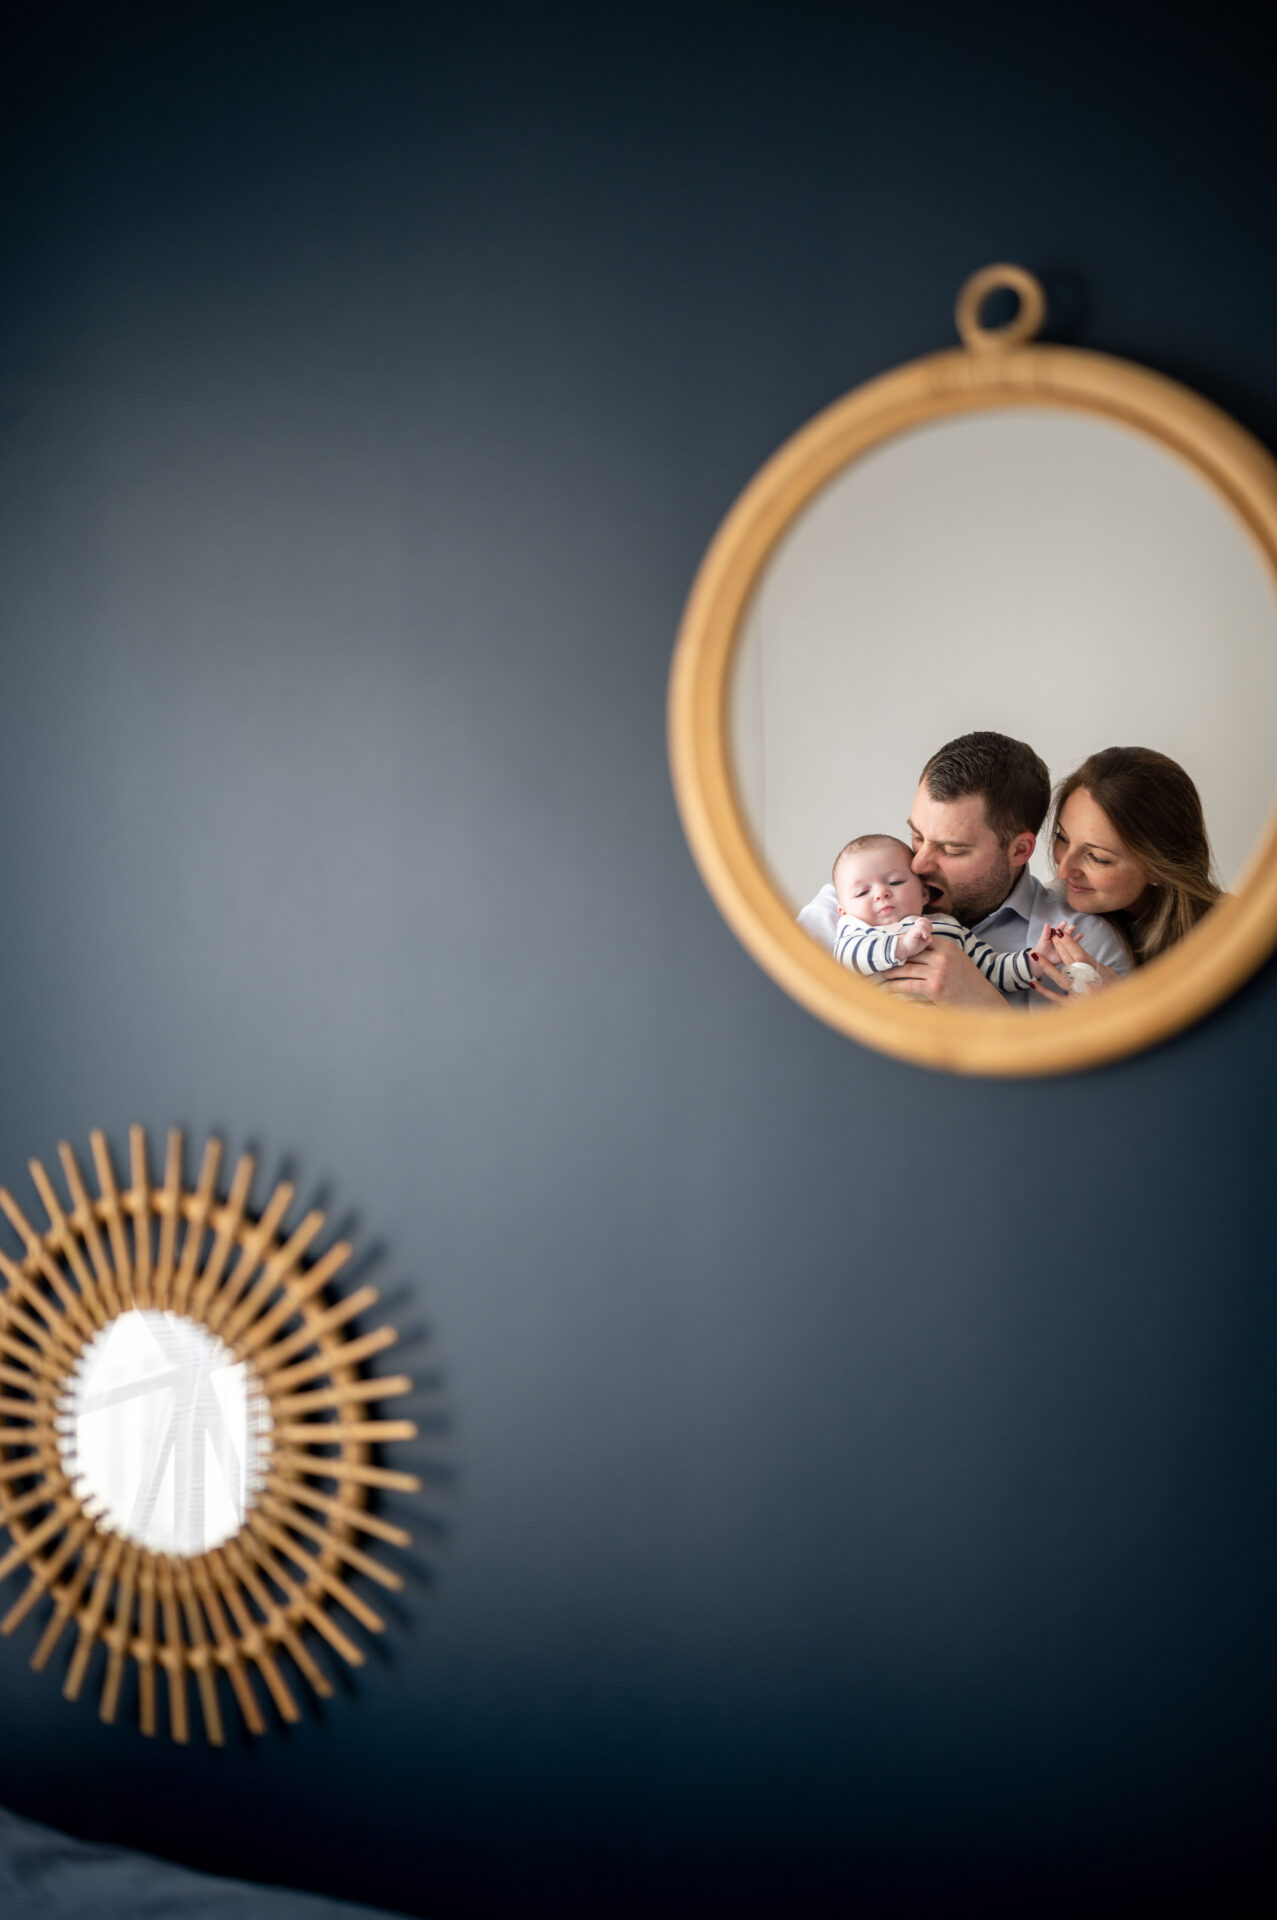 photo miroir d'une famille composée de parents qui tiennent leur enfant